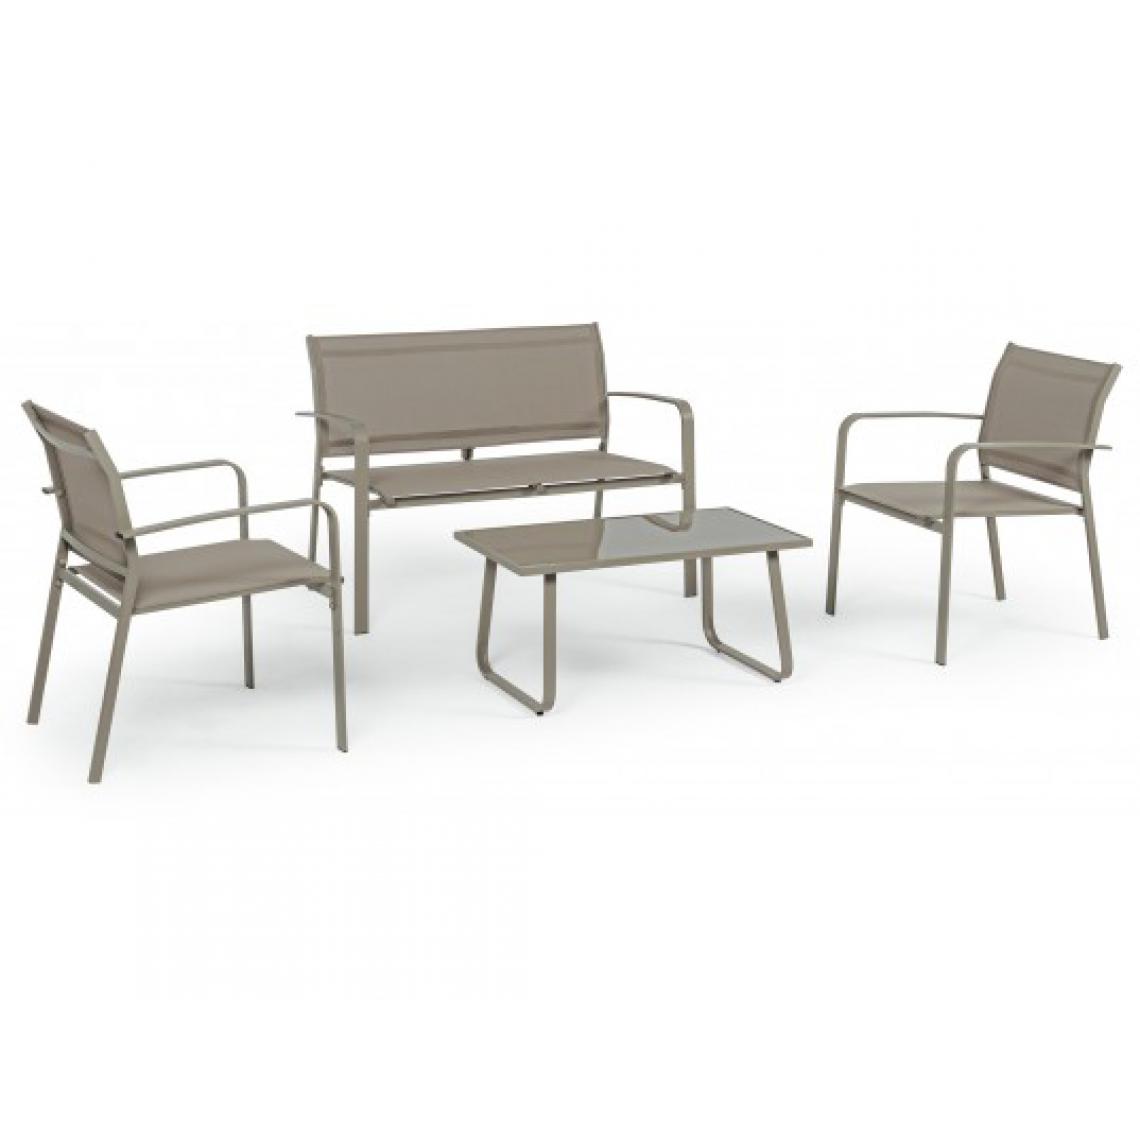 Bizzotto - Canapé extérieur Arent canapé + 2 fauteuils +table basse taupe - Fauteuil de jardin